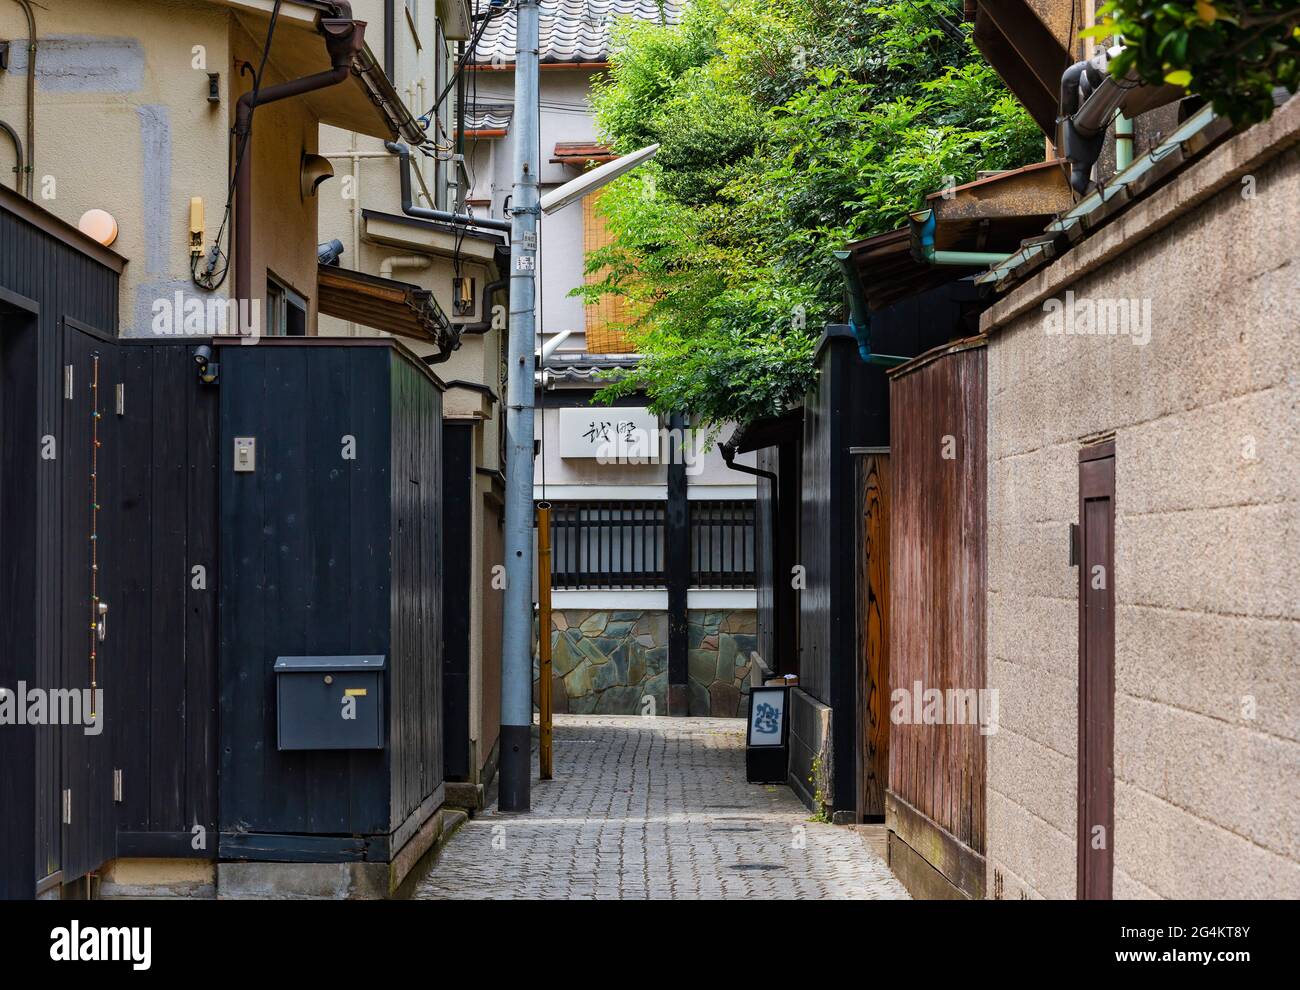 tokio, japan - 08 2021. juni: Enger gepflasterter Pfad des Kakurenbo yokocho oder verstecken Sie sich und suchen Gasse im alten Rotlichtviertel von Ushigome Hanamachi mit Th Stockfoto